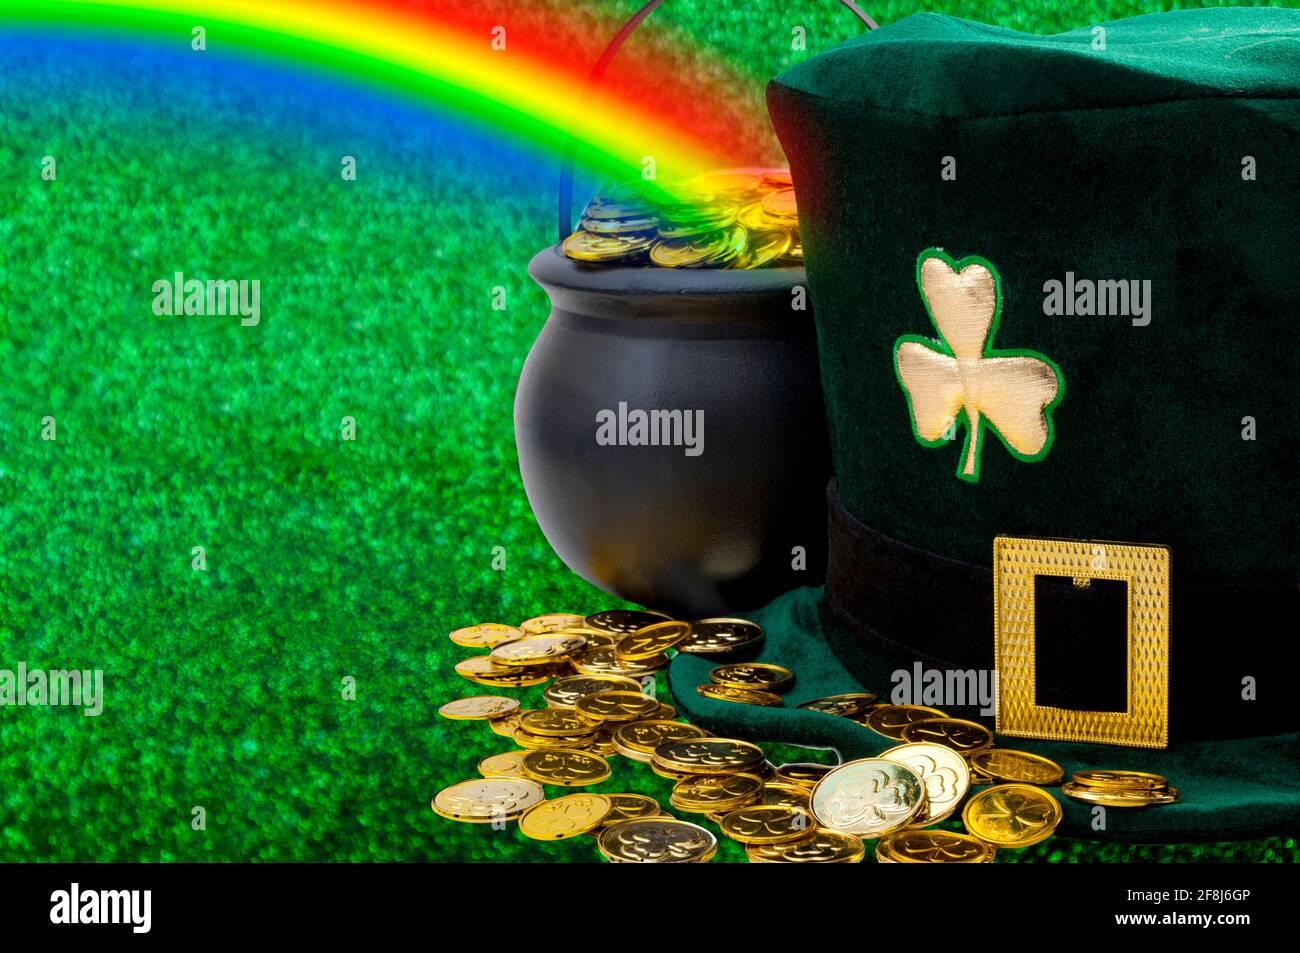 Mars meme et Happy St patrick's Day concept avec chapeau de lepretchun vert drôle avec shamrock, pot d'or à la fin de l'arc-en-ciel et golde dispersé Banque D'Images